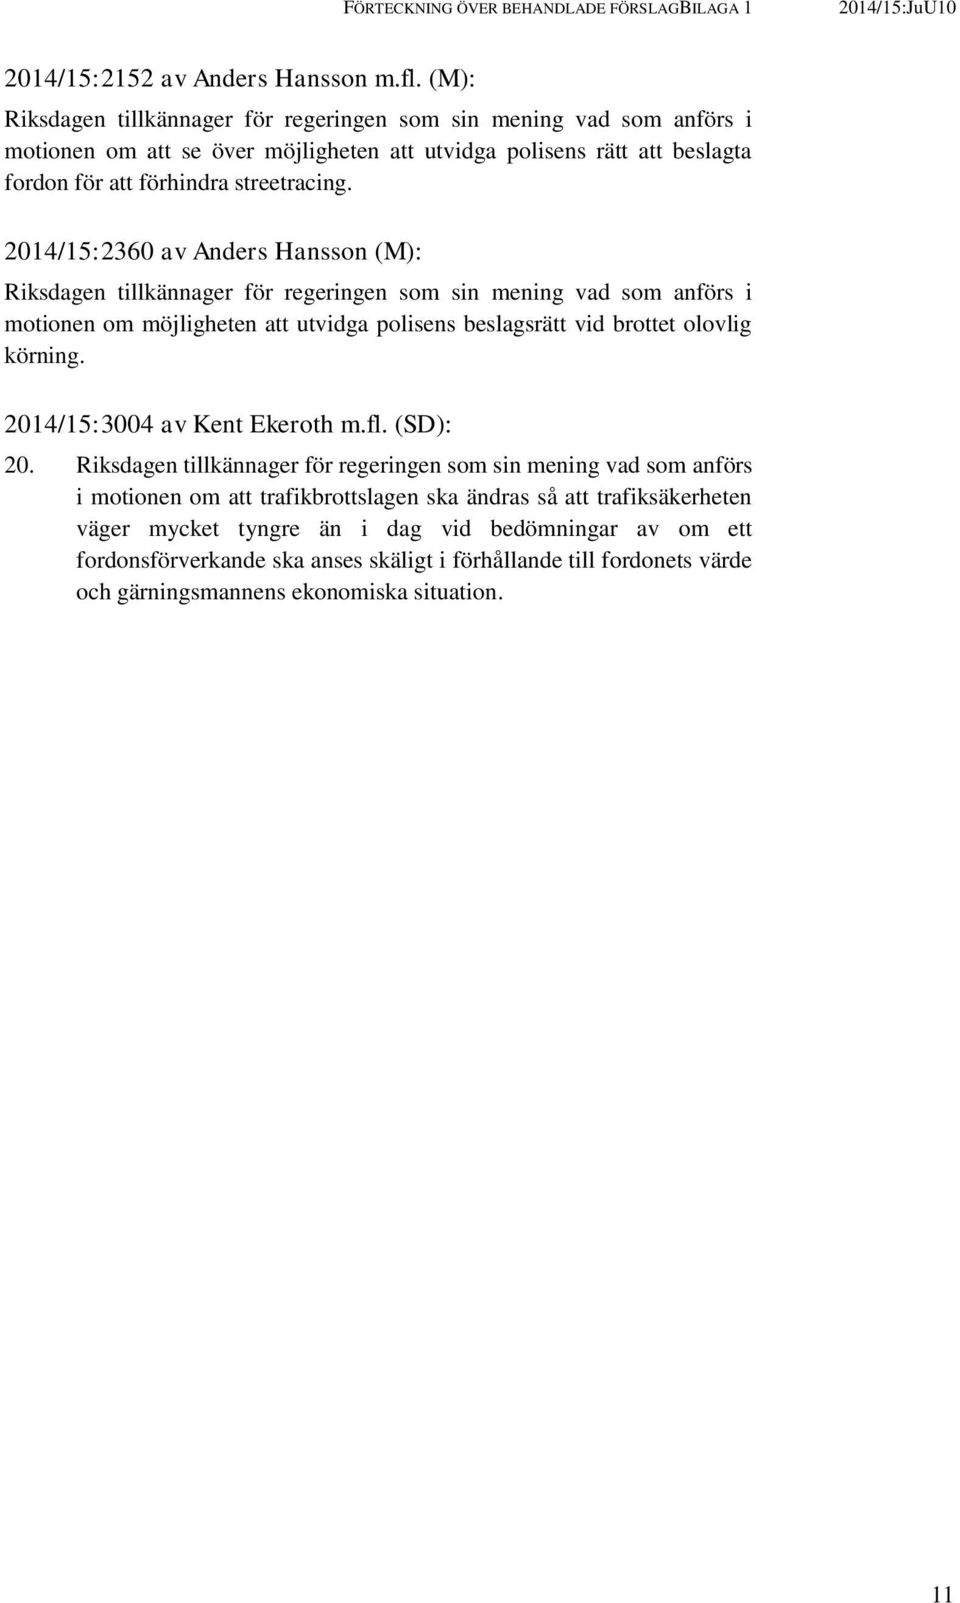 2014/15:2360 av Anders Hansson (M): motionen om möjligheten att utvidga polisens beslagsrätt vid brottet olovlig körning. 2014/15:3004 av Kent Ekeroth m.fl. (SD): 20.